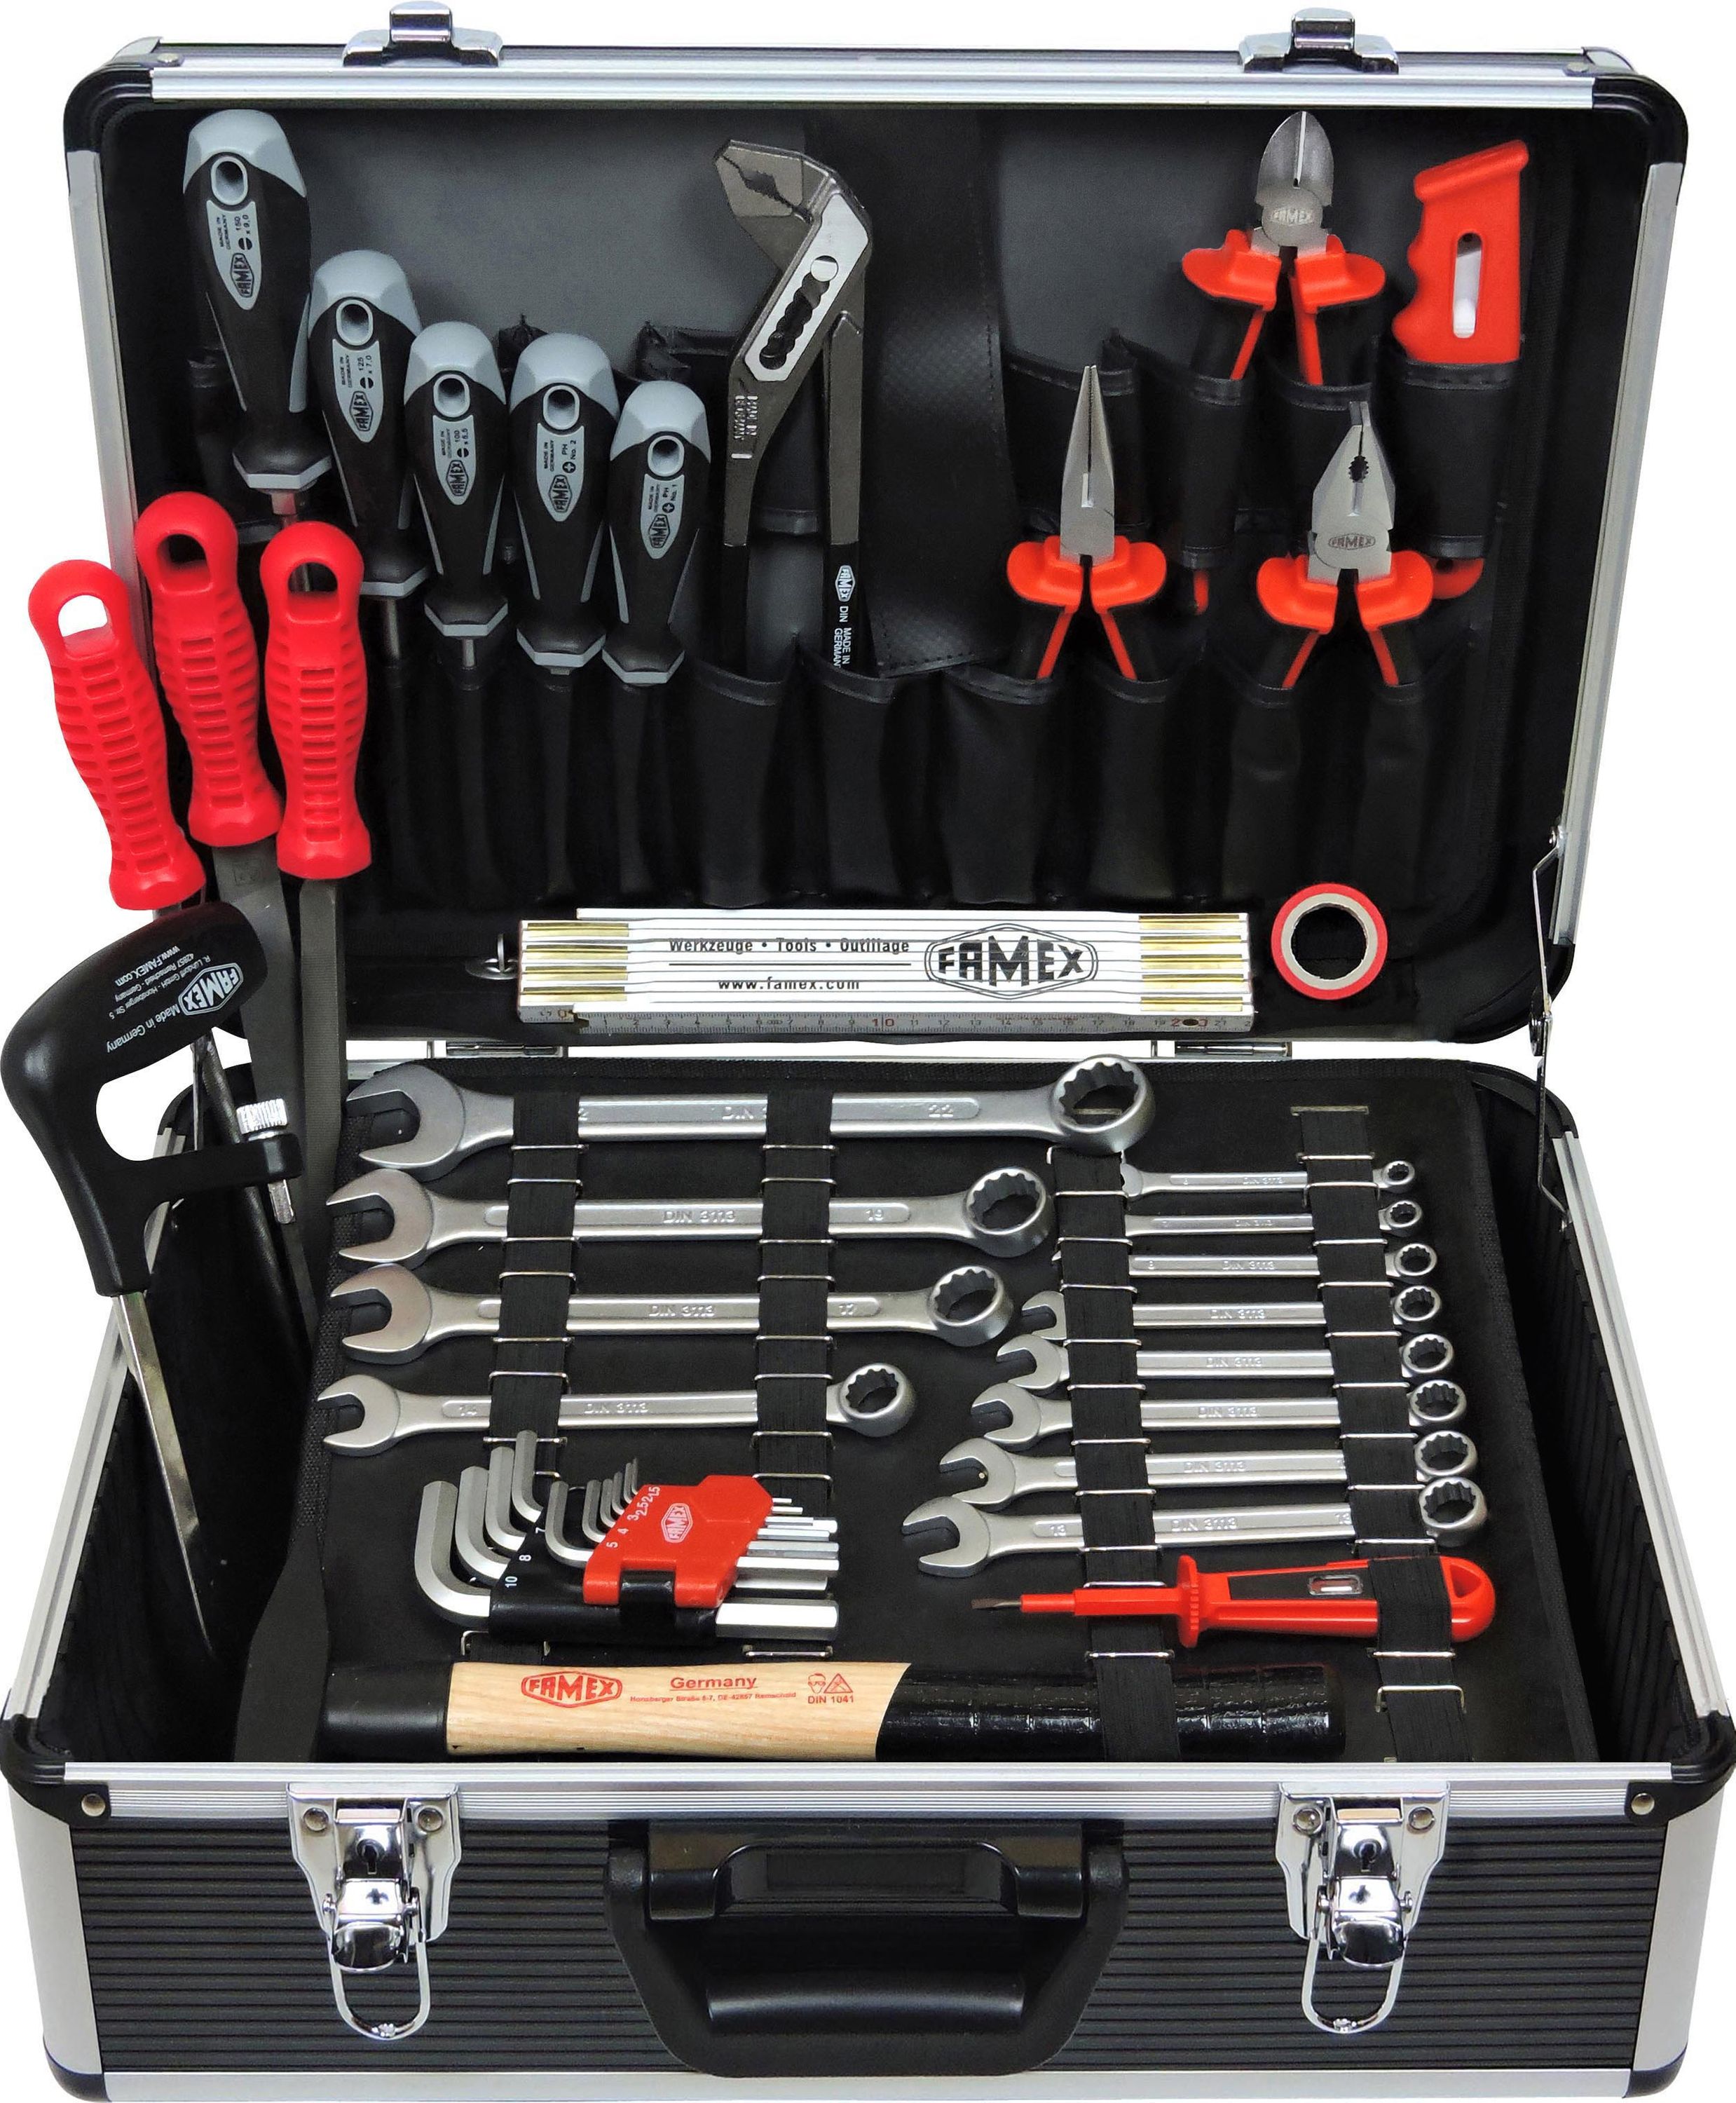 Werkzeug Werkzeugkasten - FAMEX mit gefüllt 749-94 - Profi bestückt Alu-Werkzeugkoffer